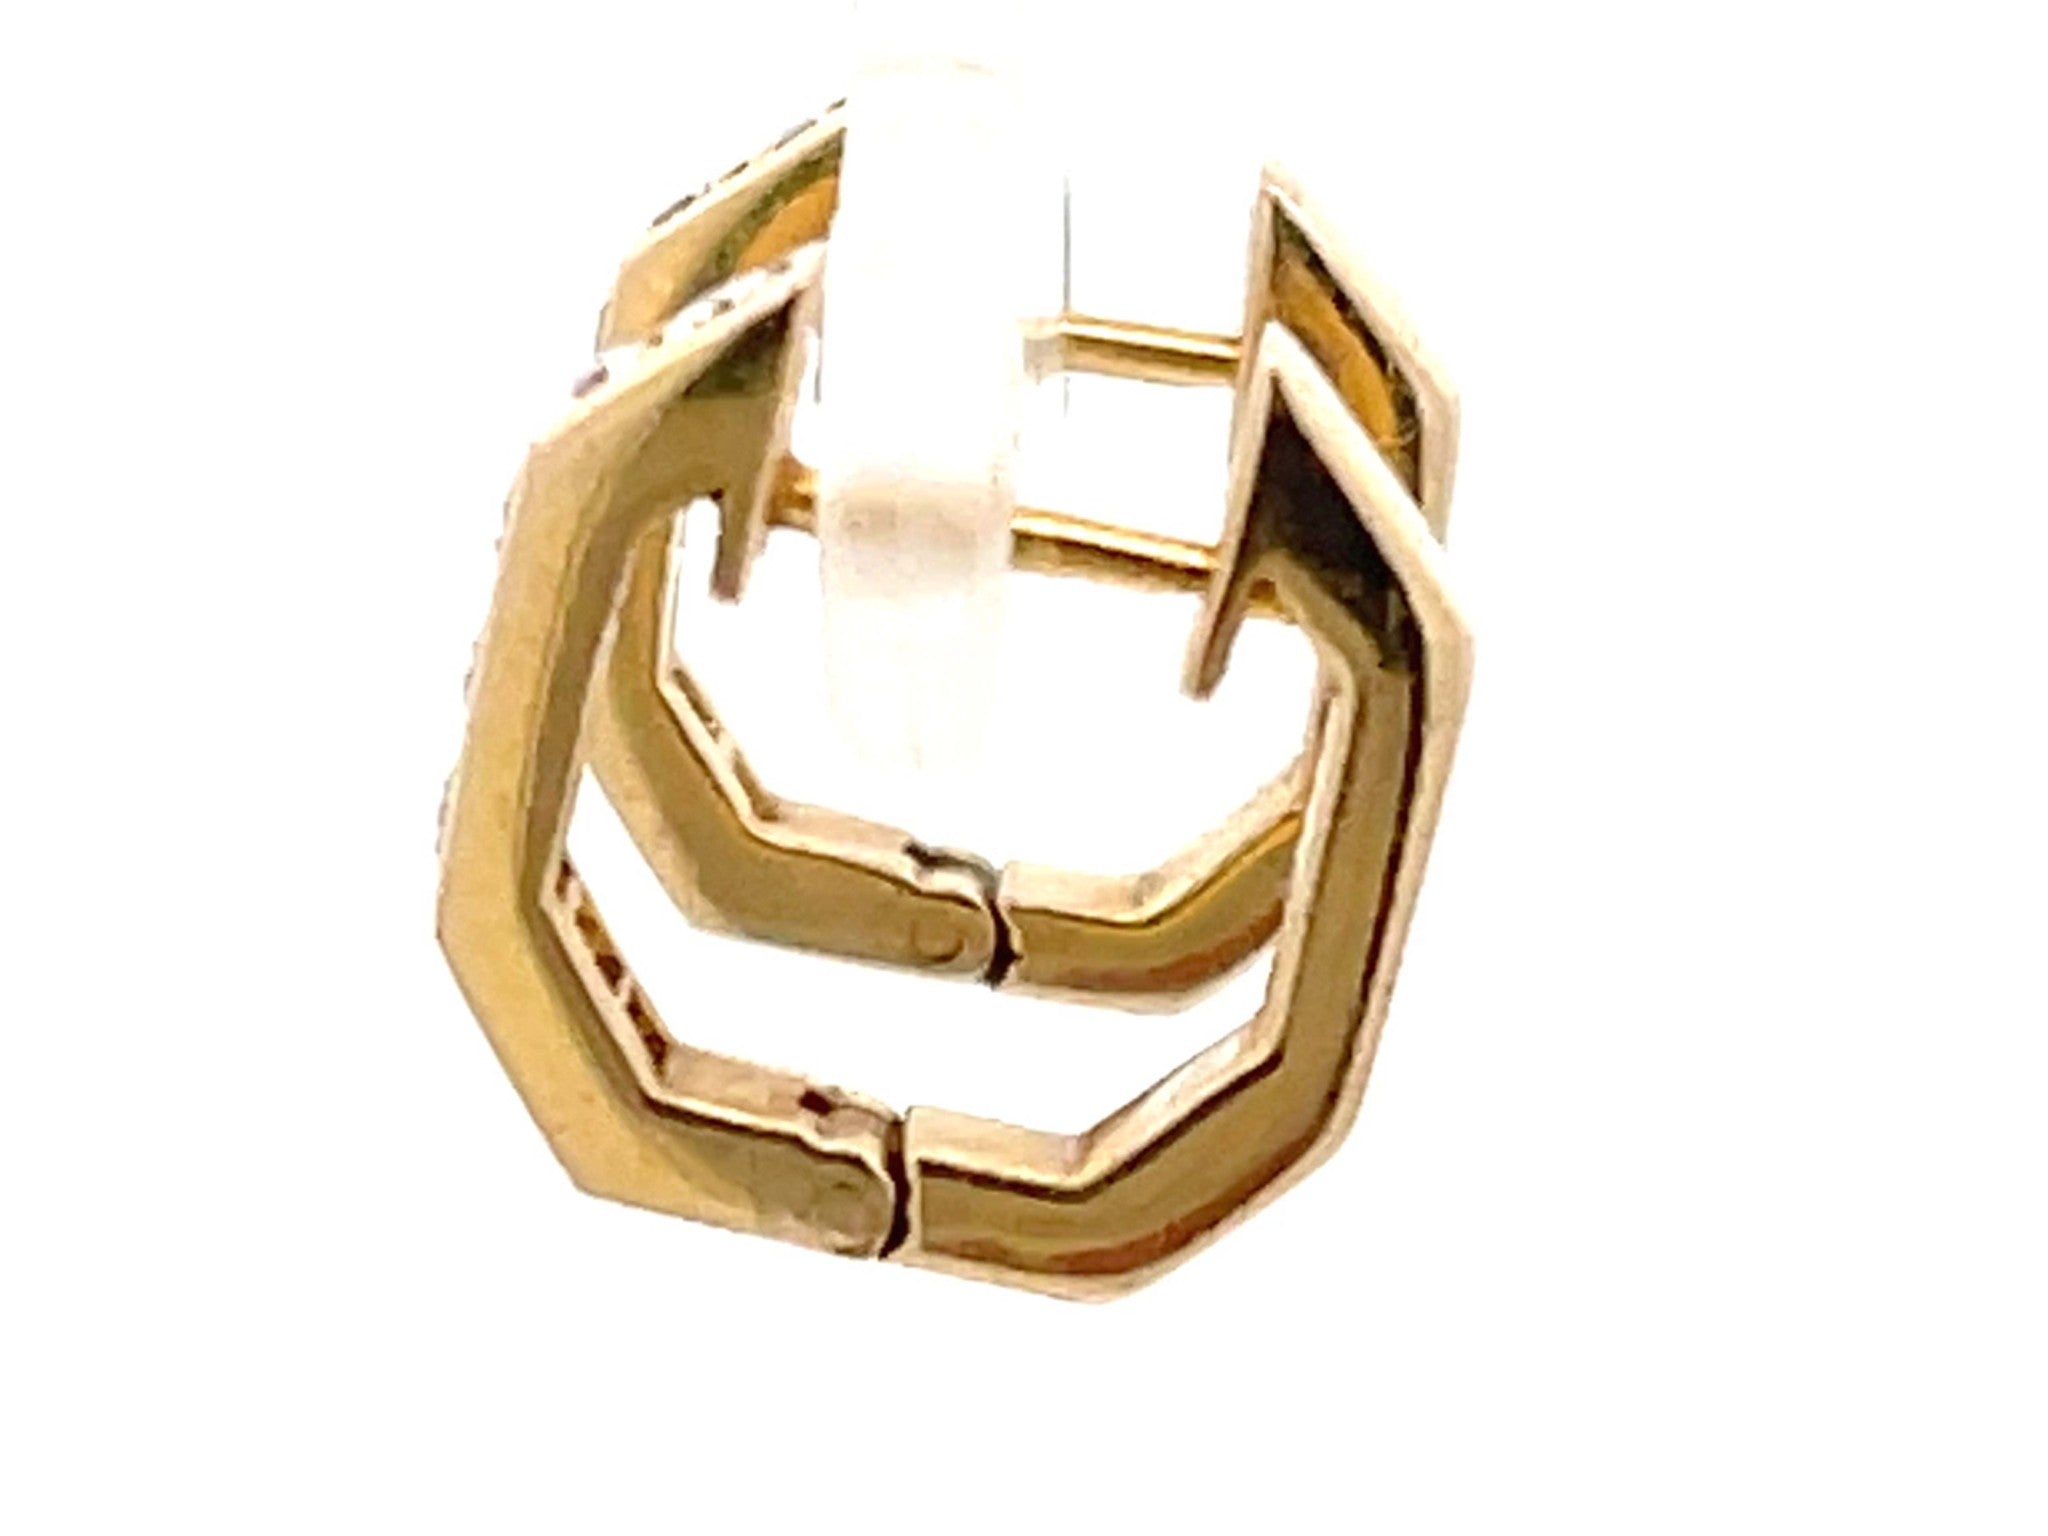 Small Hoop Channel Set Diamond Earrings in 14k Yellow Gold